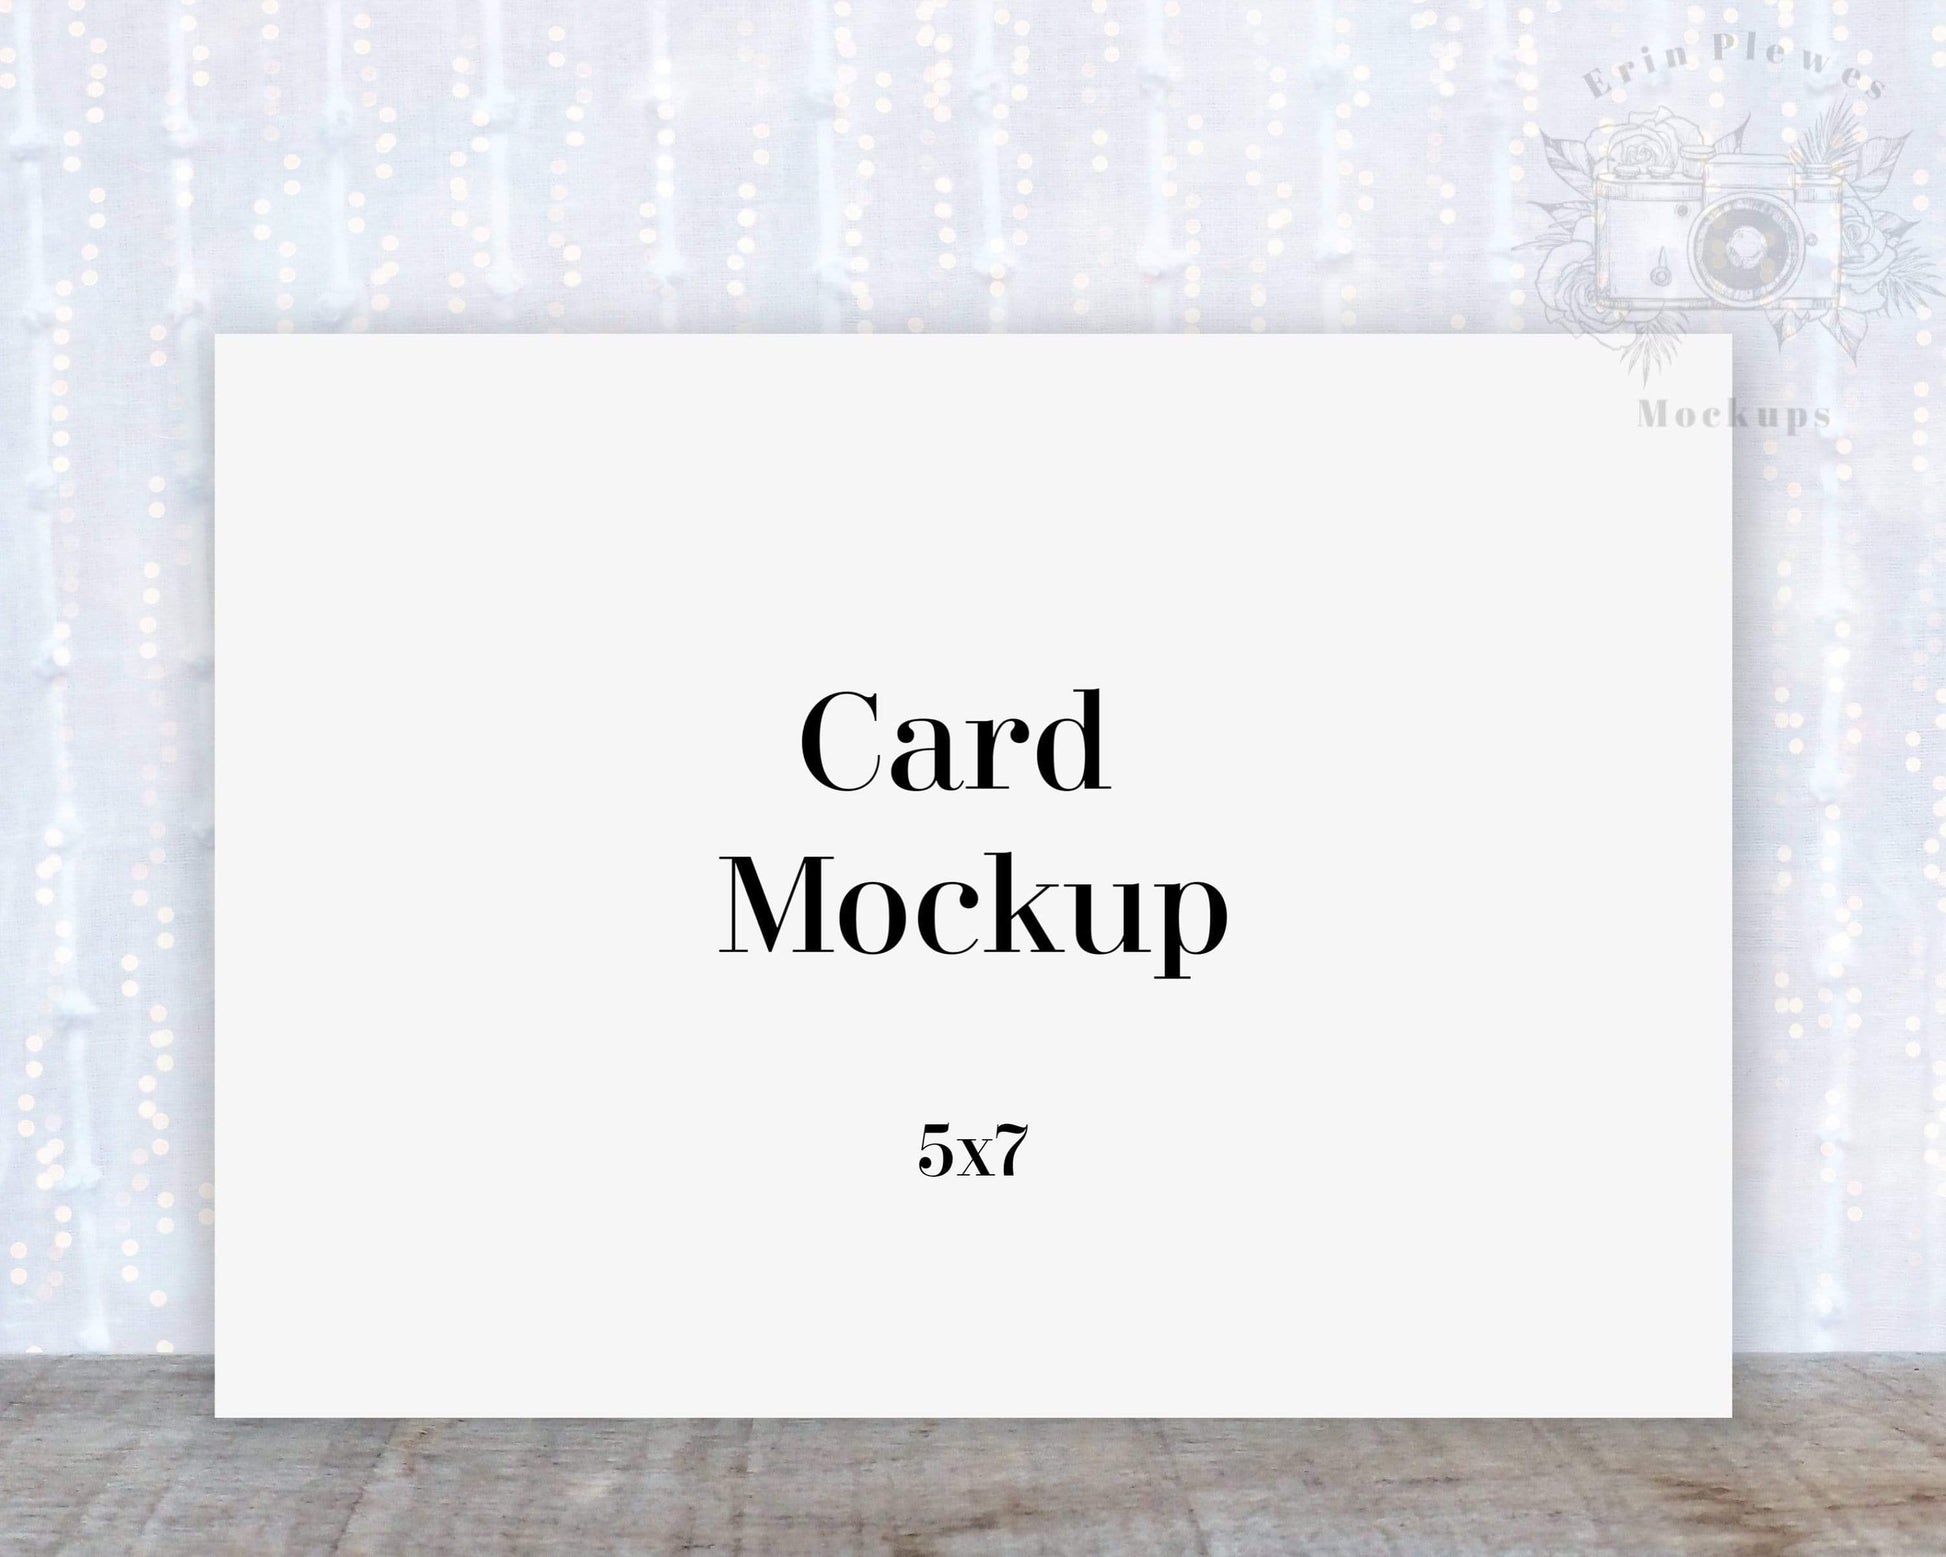 Erin Plewes Mockups Mockup Card mockup, Invitation mock up for rustic wedding 5x7 landscape card, Jpeg Instant Digital Download Template